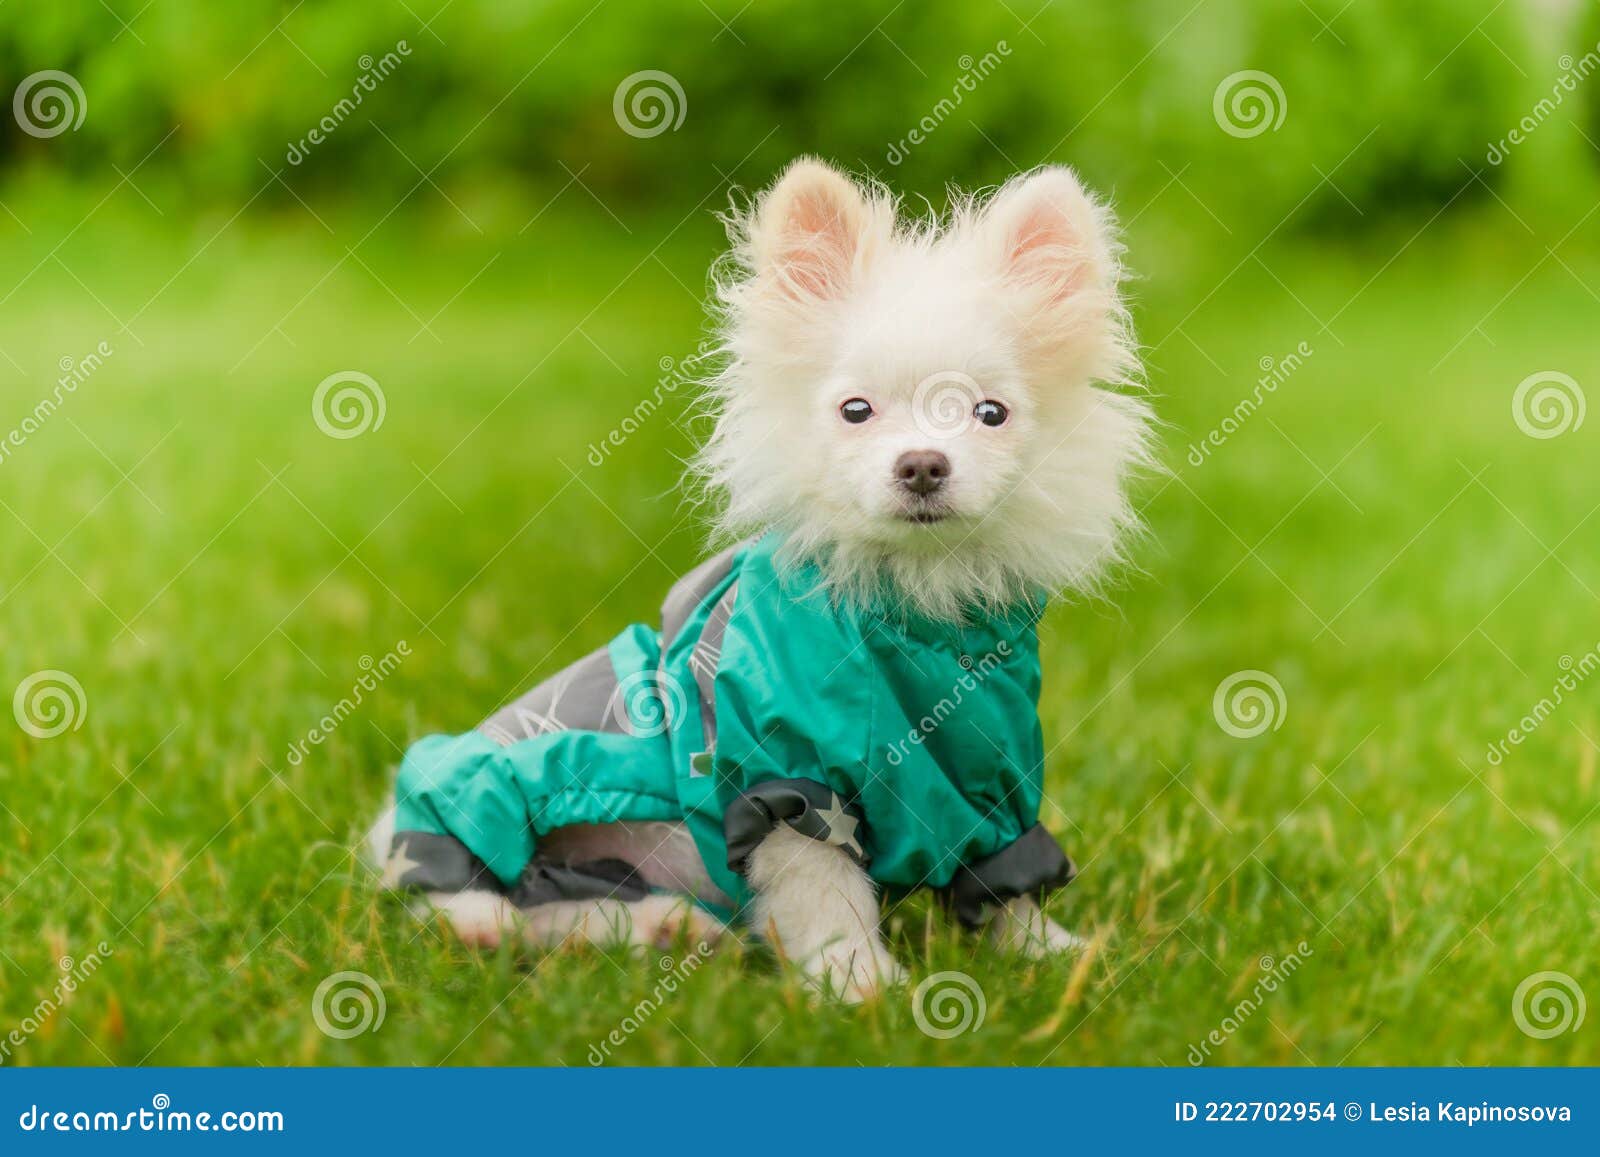 Pommerse Puppy Met Kleren. Hond in Een Groene Regenjas. Witteboe in Kleding Op Het Gras Foto - Image of portret, gras: 222702954